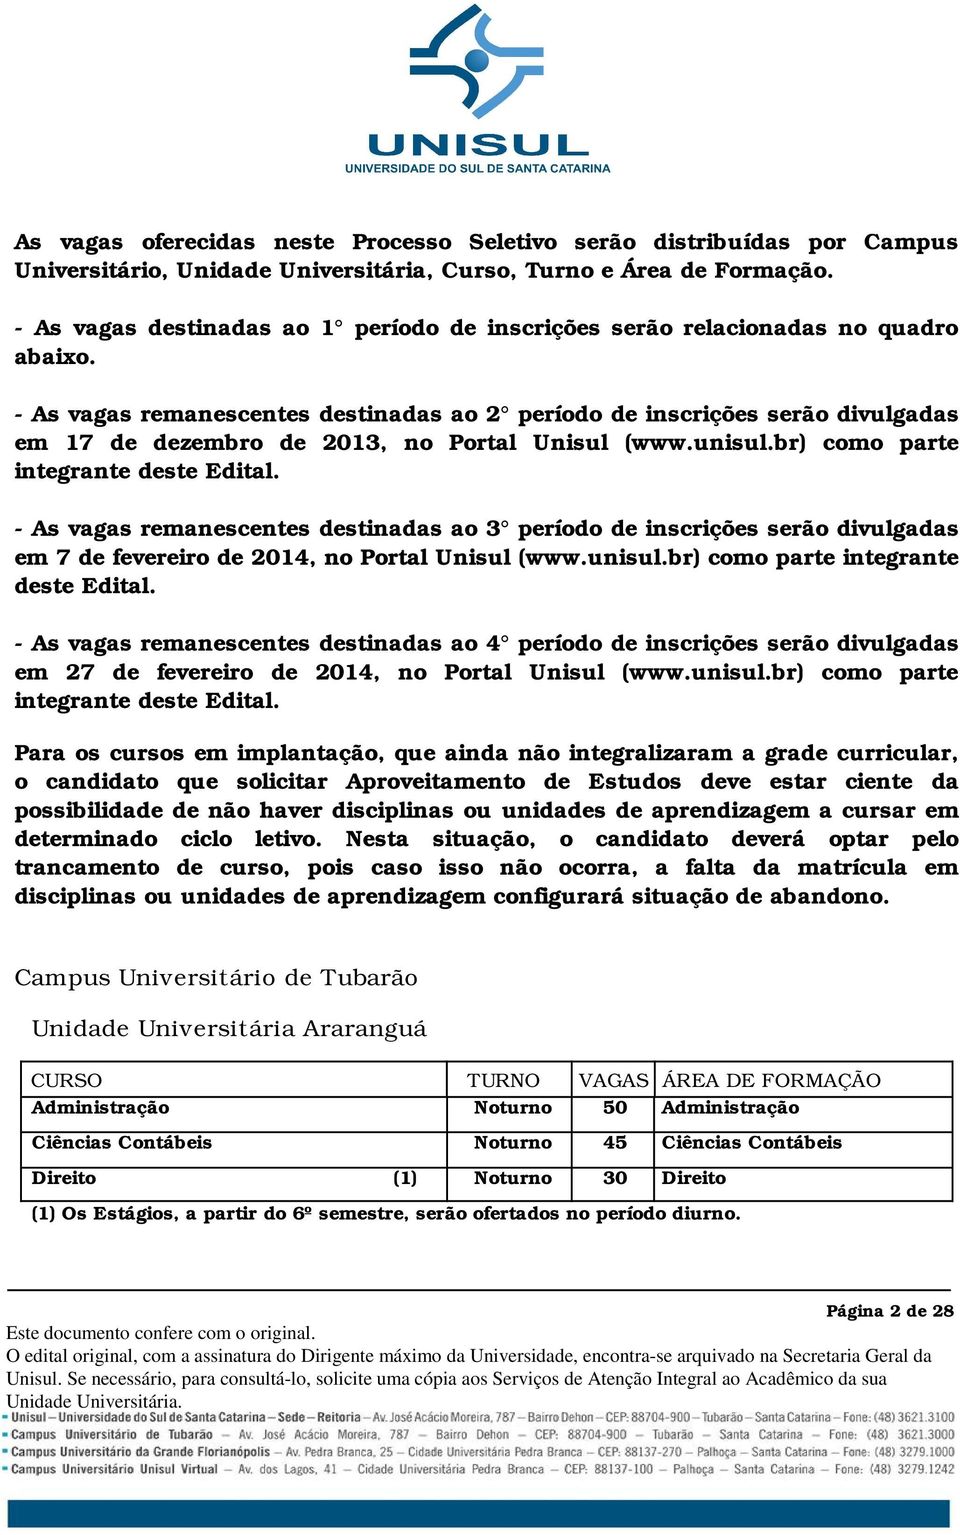 - As vagas remanescentes destinadas ao 2 período de inscrições serão divulgadas em 17 de dezembro de 2013, no Portal Unisul (www.unisul.br) como parte integrante deste Edital.